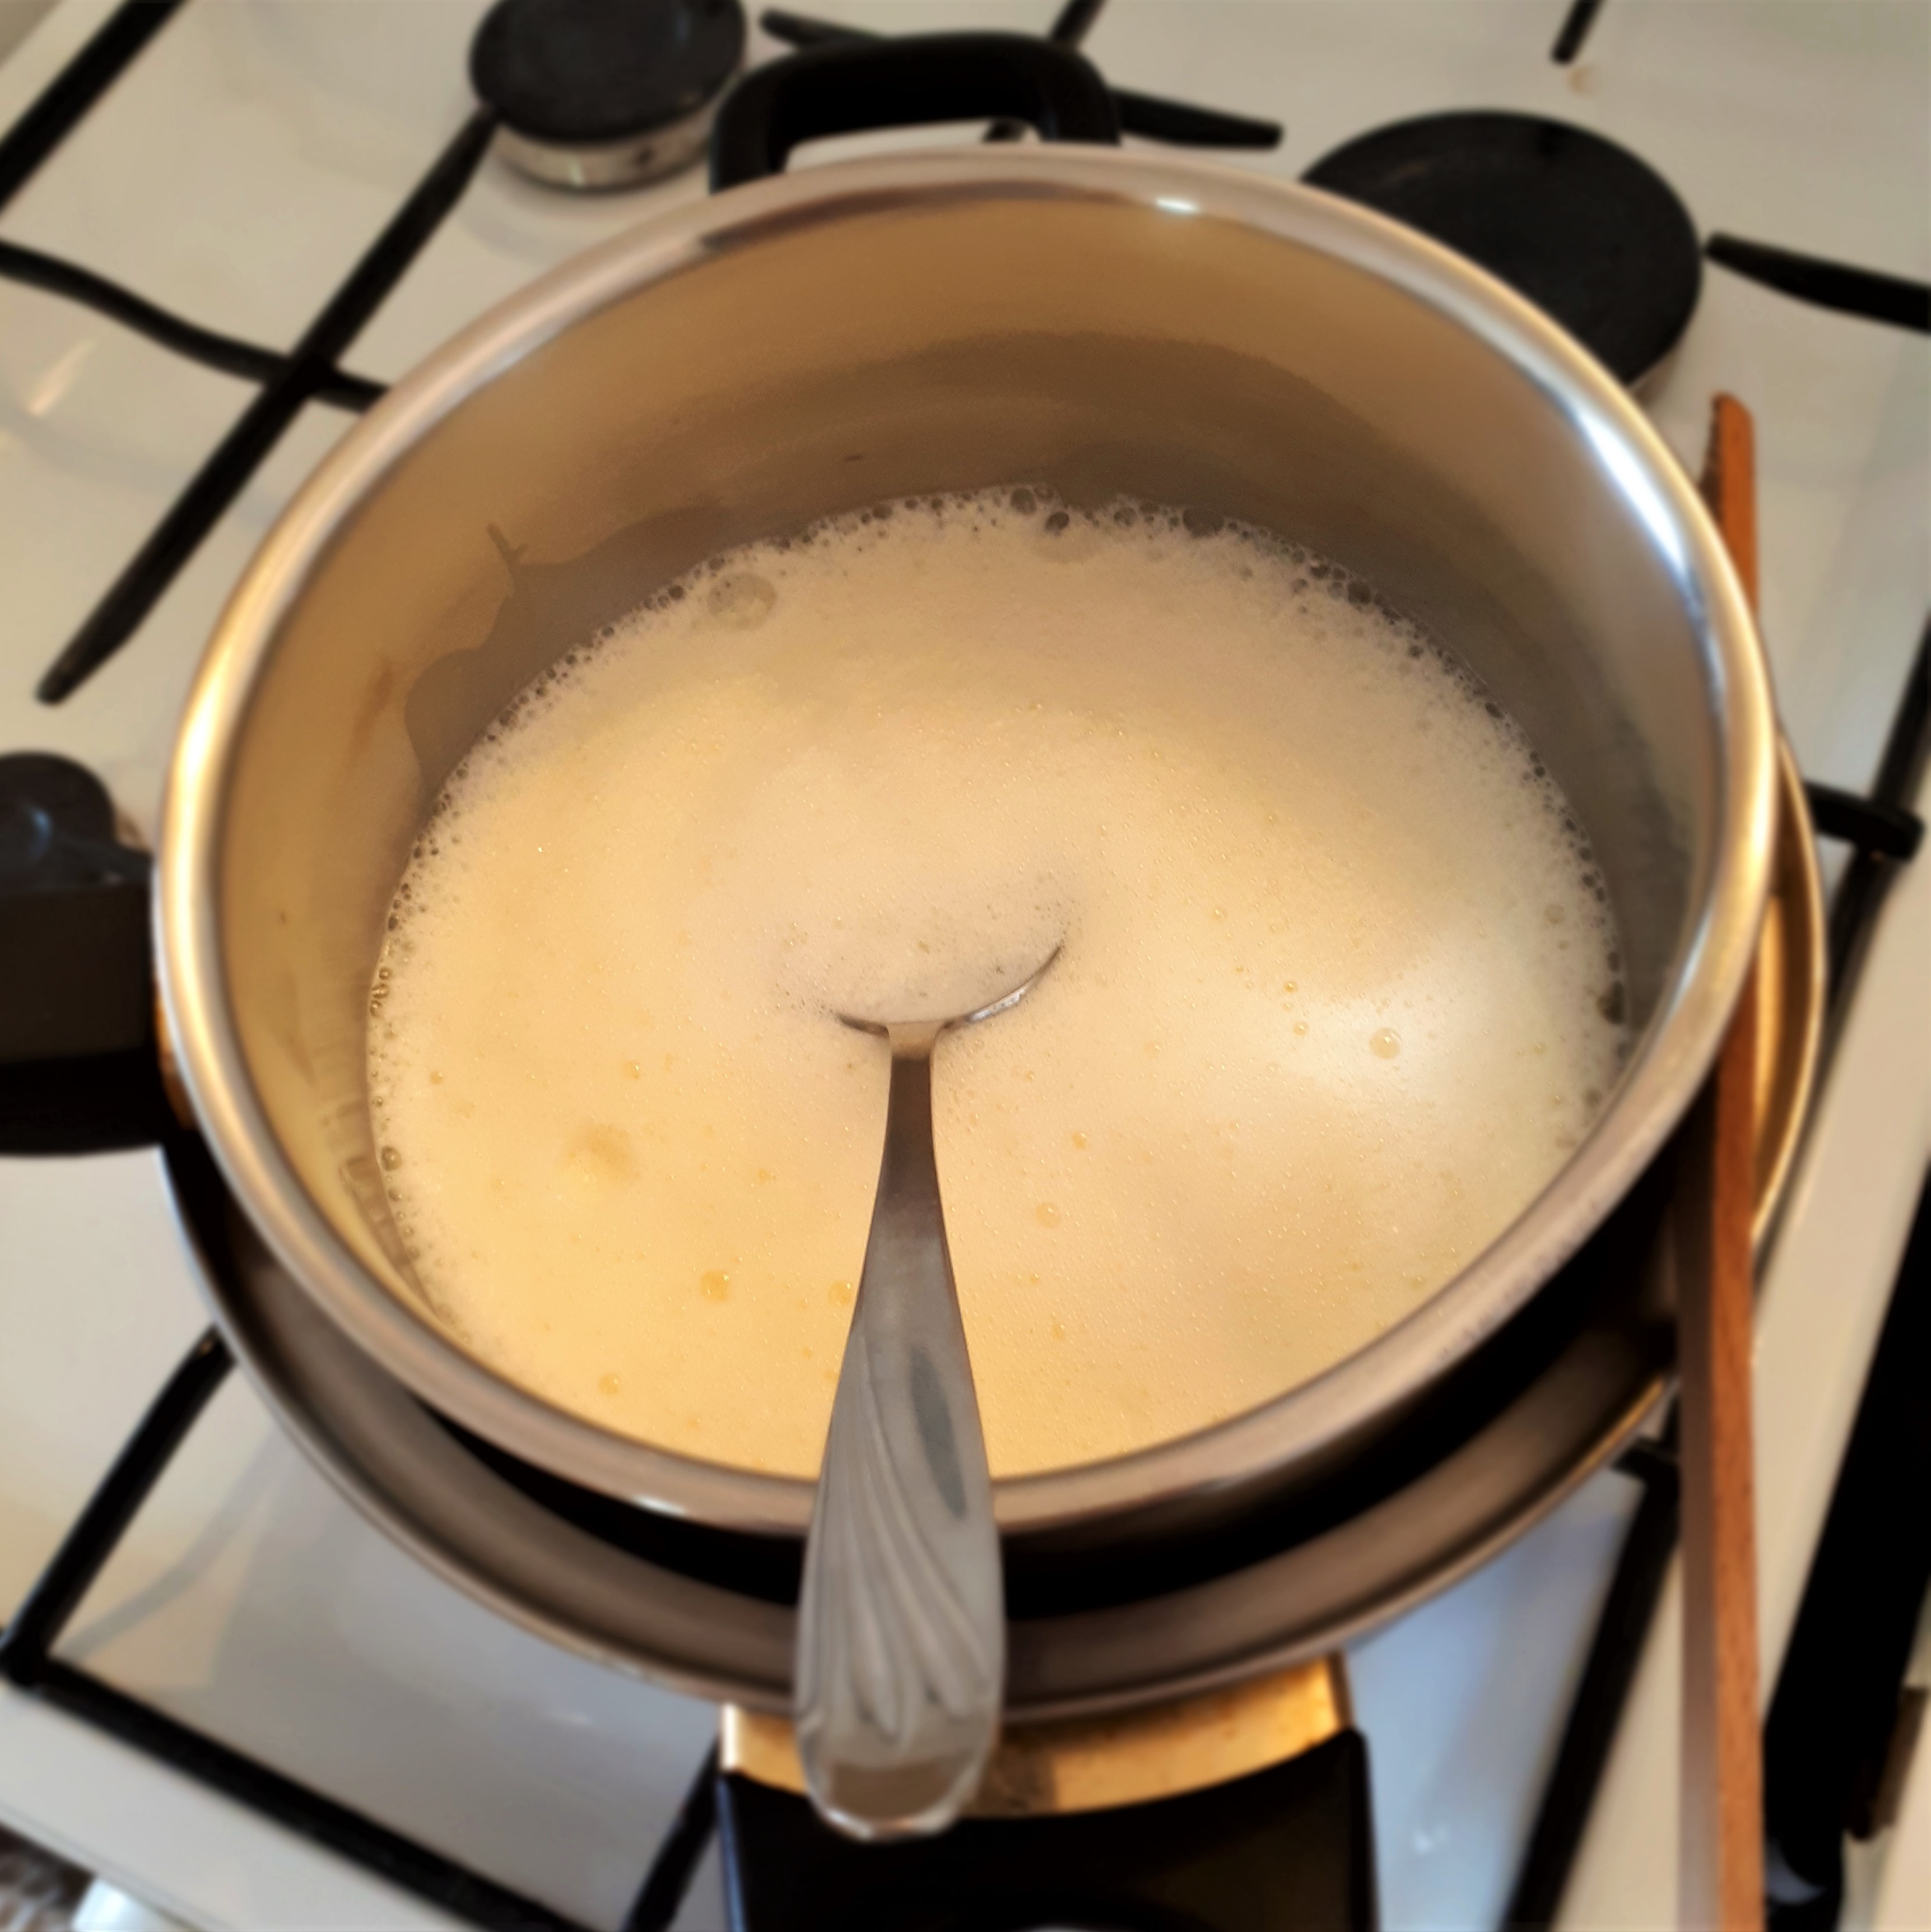 Menší hrniec s krémom na Crème brûlée a polievkovou lyžicou vložený vo väčšom hrnci s vriacou vodou z jednej strany podopretý drevenou varechou na sporáku.